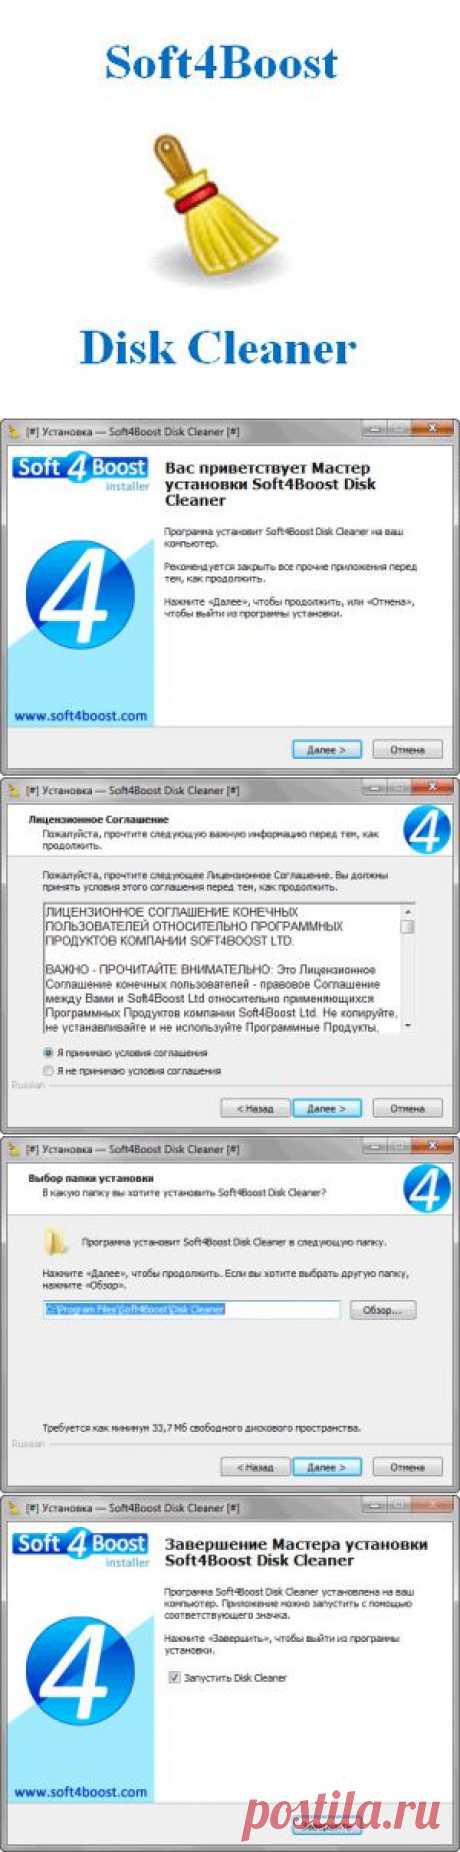 Soft4Boost Disk Cleaner для очистки и оптимизации компьютера | Интернет и программы для всех | vellisa.ru